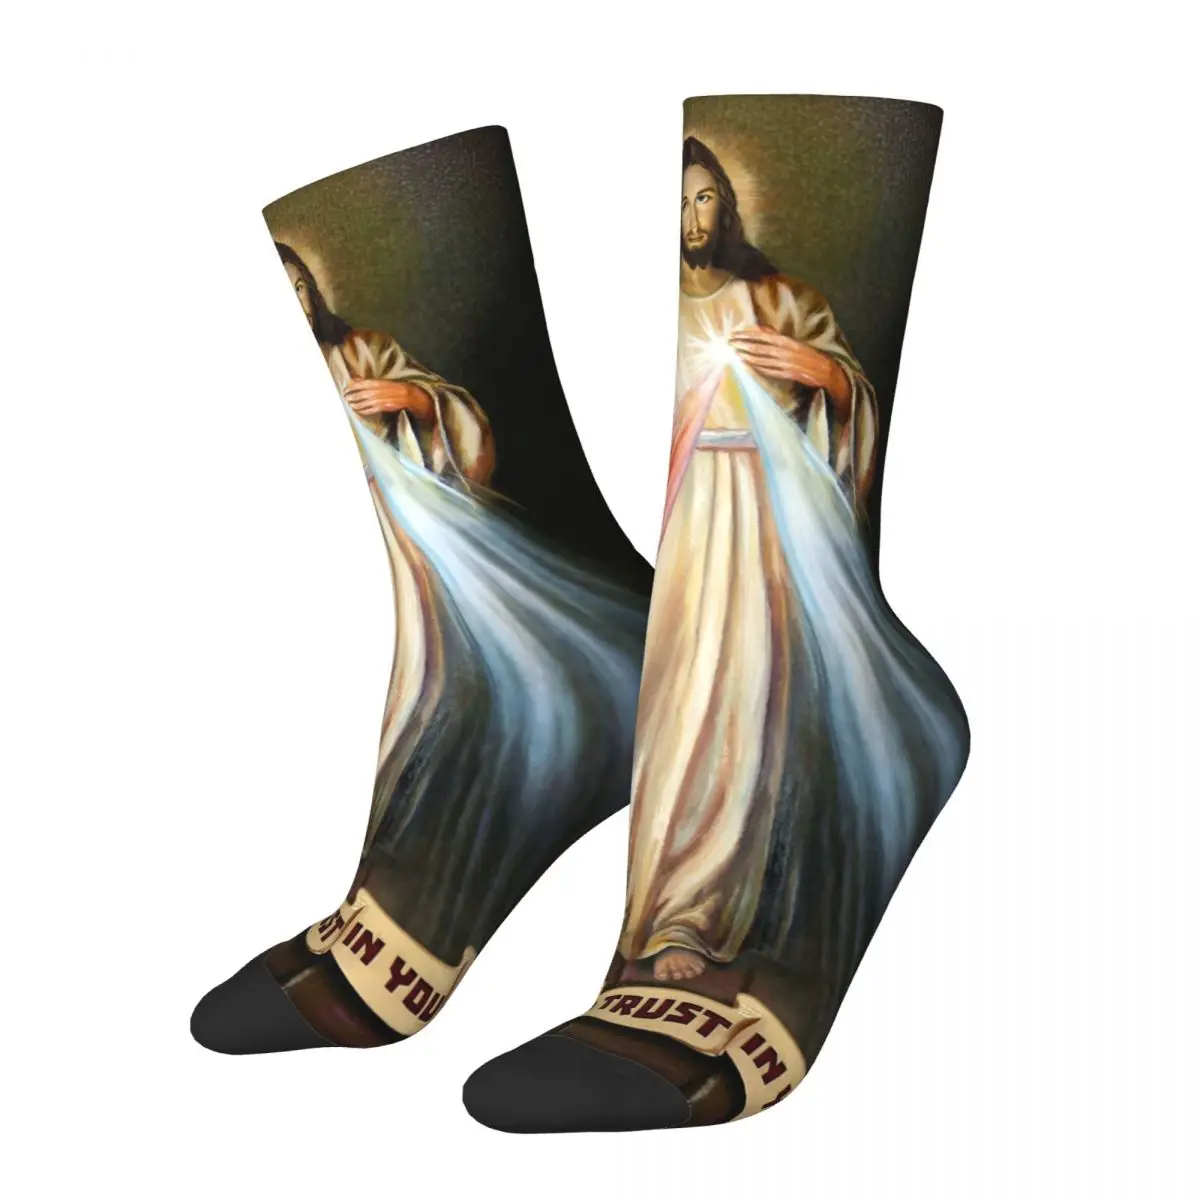 

Забавные католические уютные носки с изображением богомоликового милосердия Христоса, дизайн, все сезоны, теплые носки-карандаш с изображением Иисуса, я доверяю вам